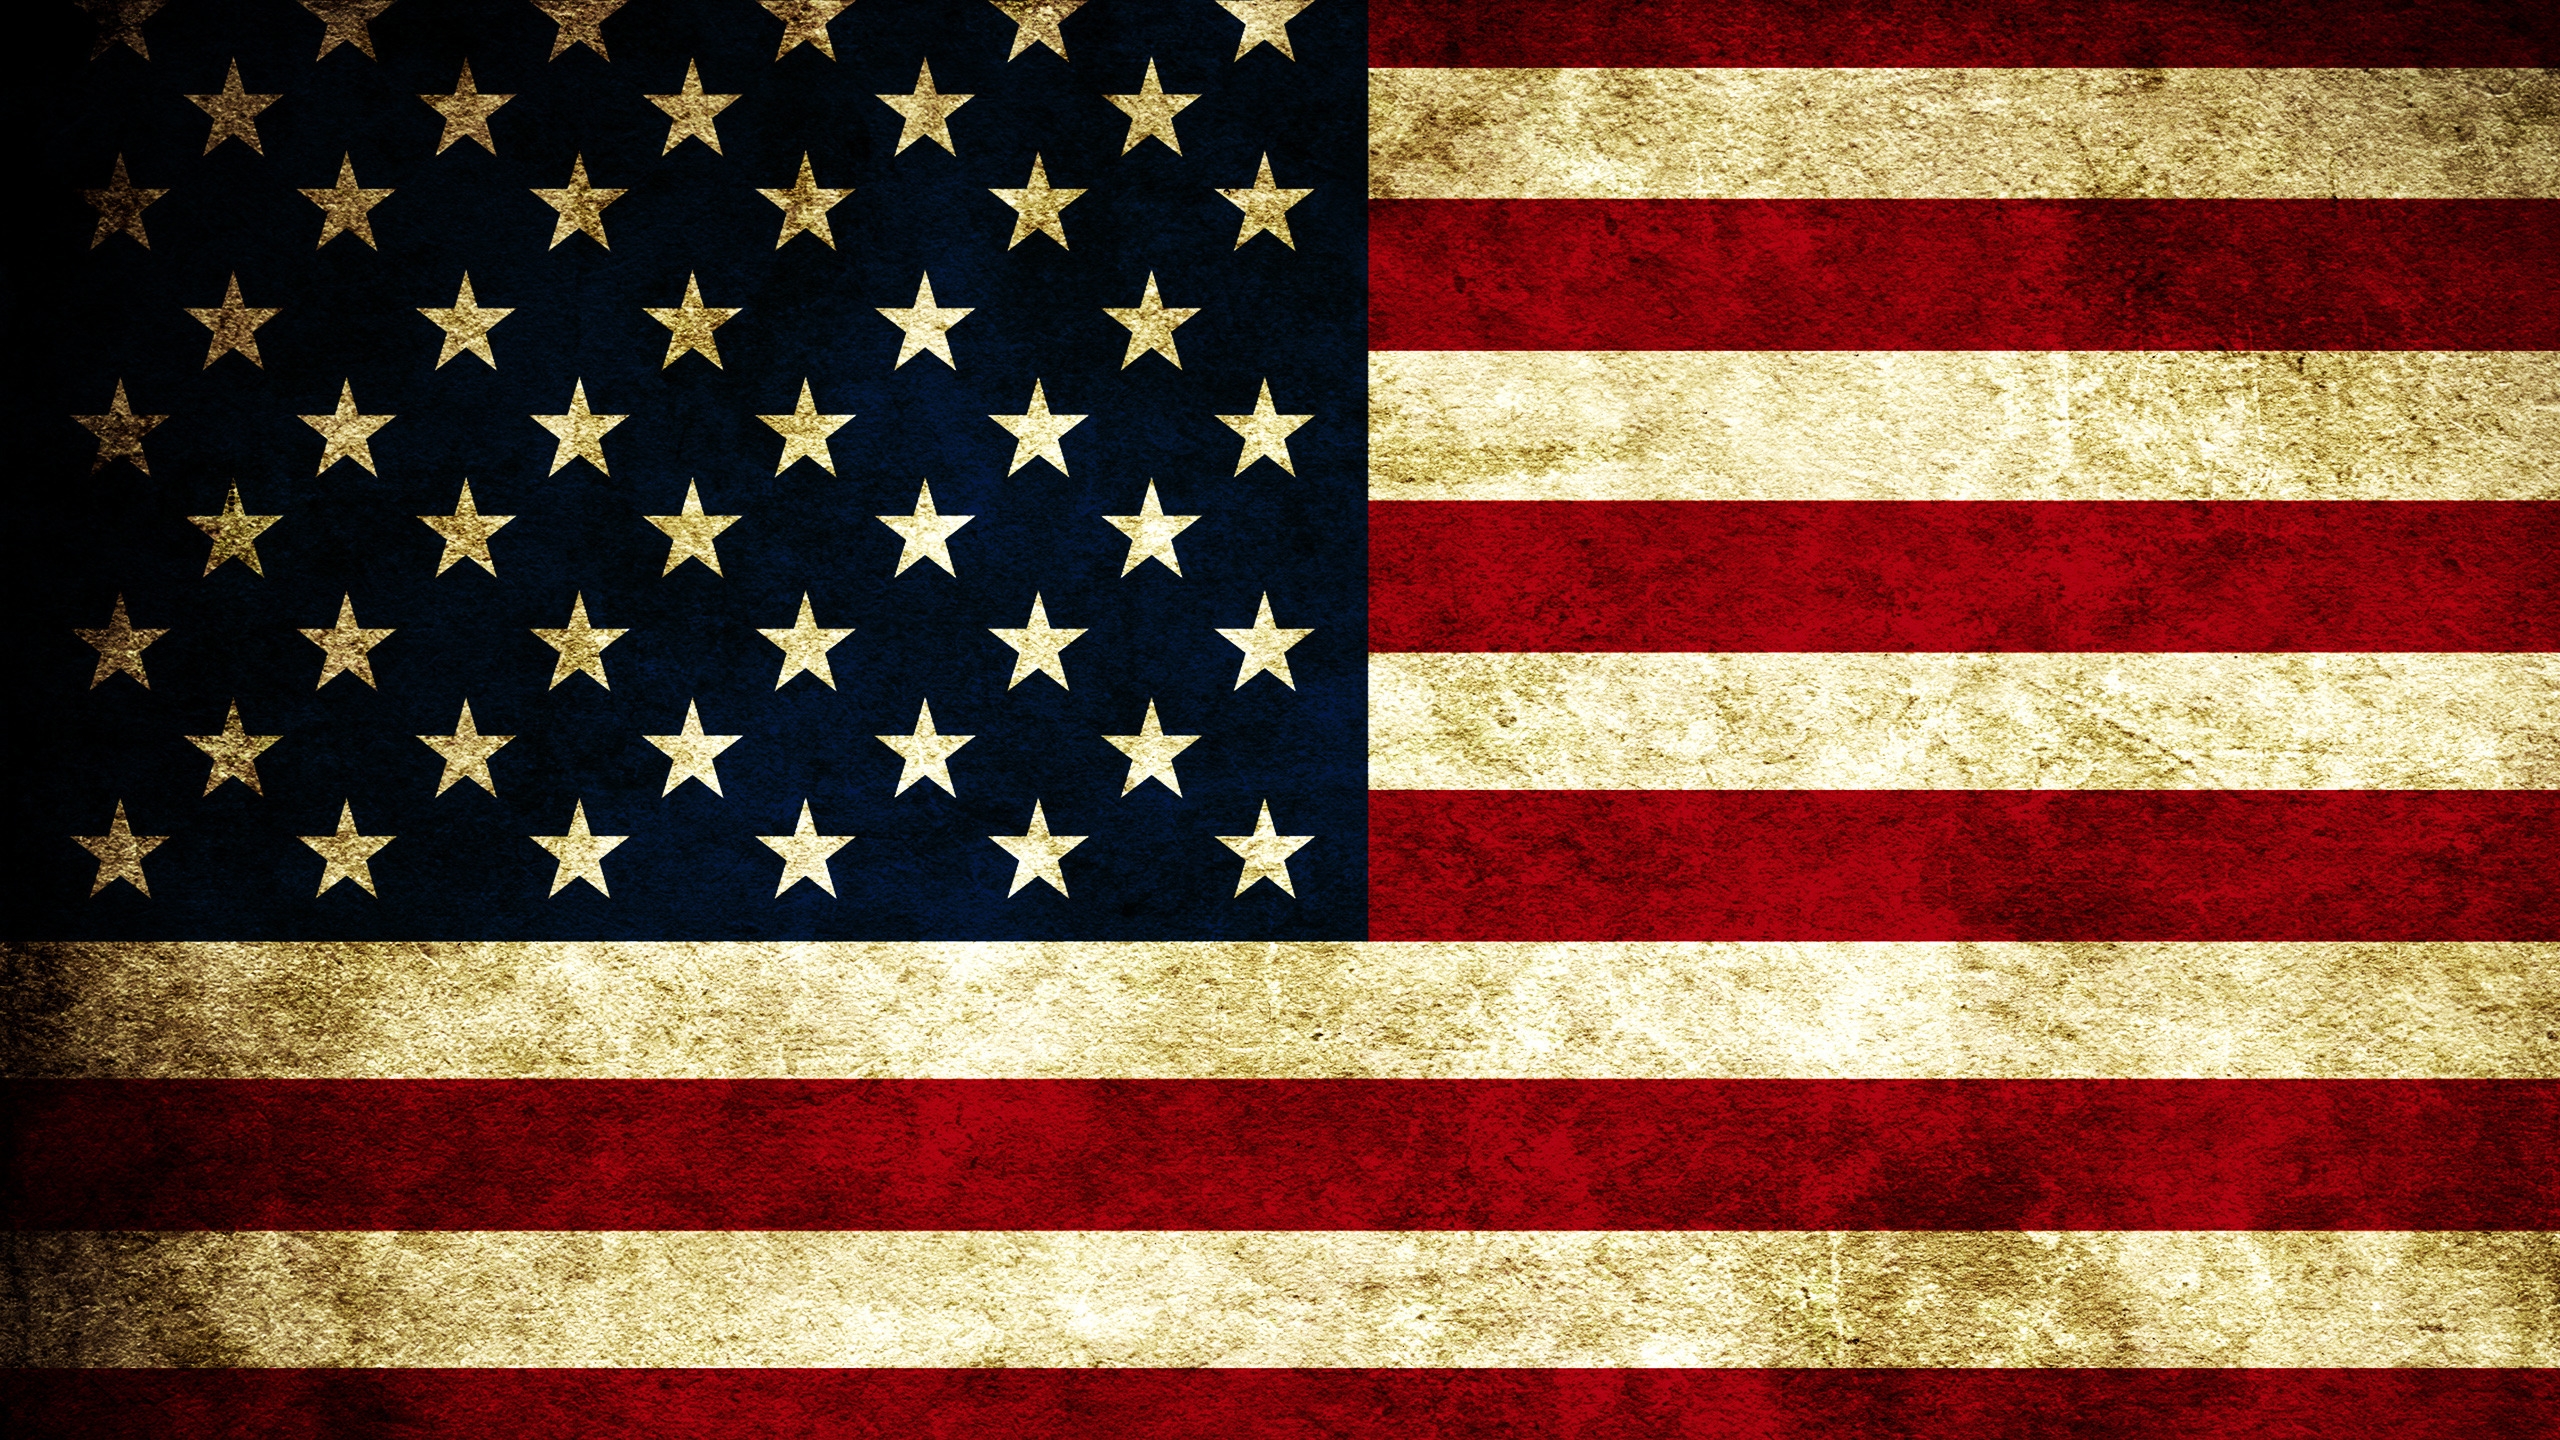 USA Grunge Flag for 2560x1440 HDTV resolution